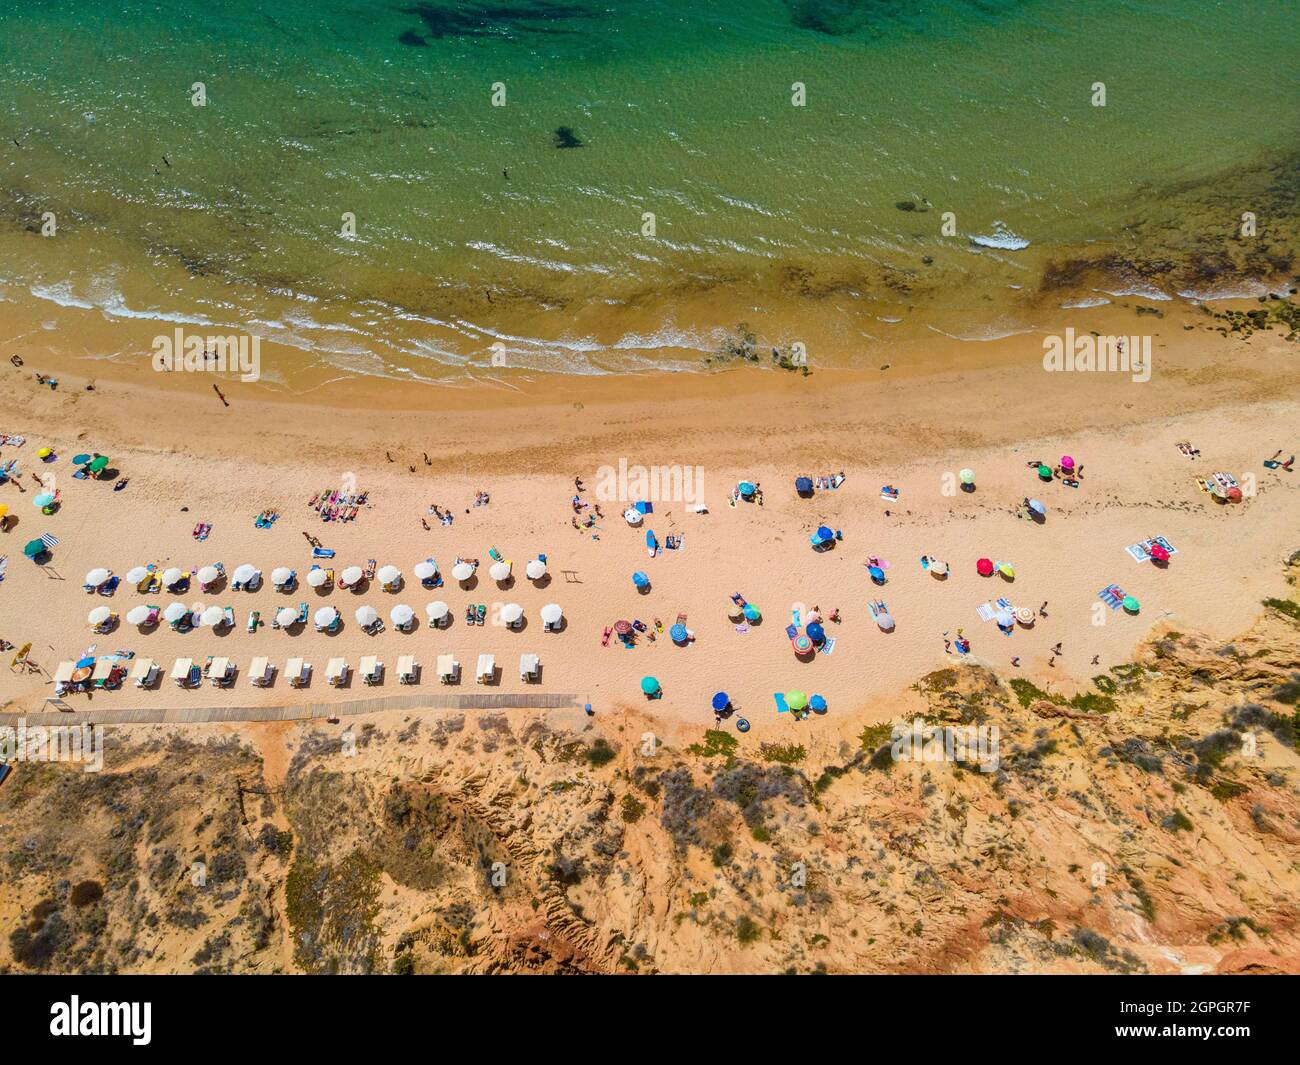 Portugal, Algarve, Albufeira, Praia do Barranco das Belharucas beach (aerial view) Stock Photo